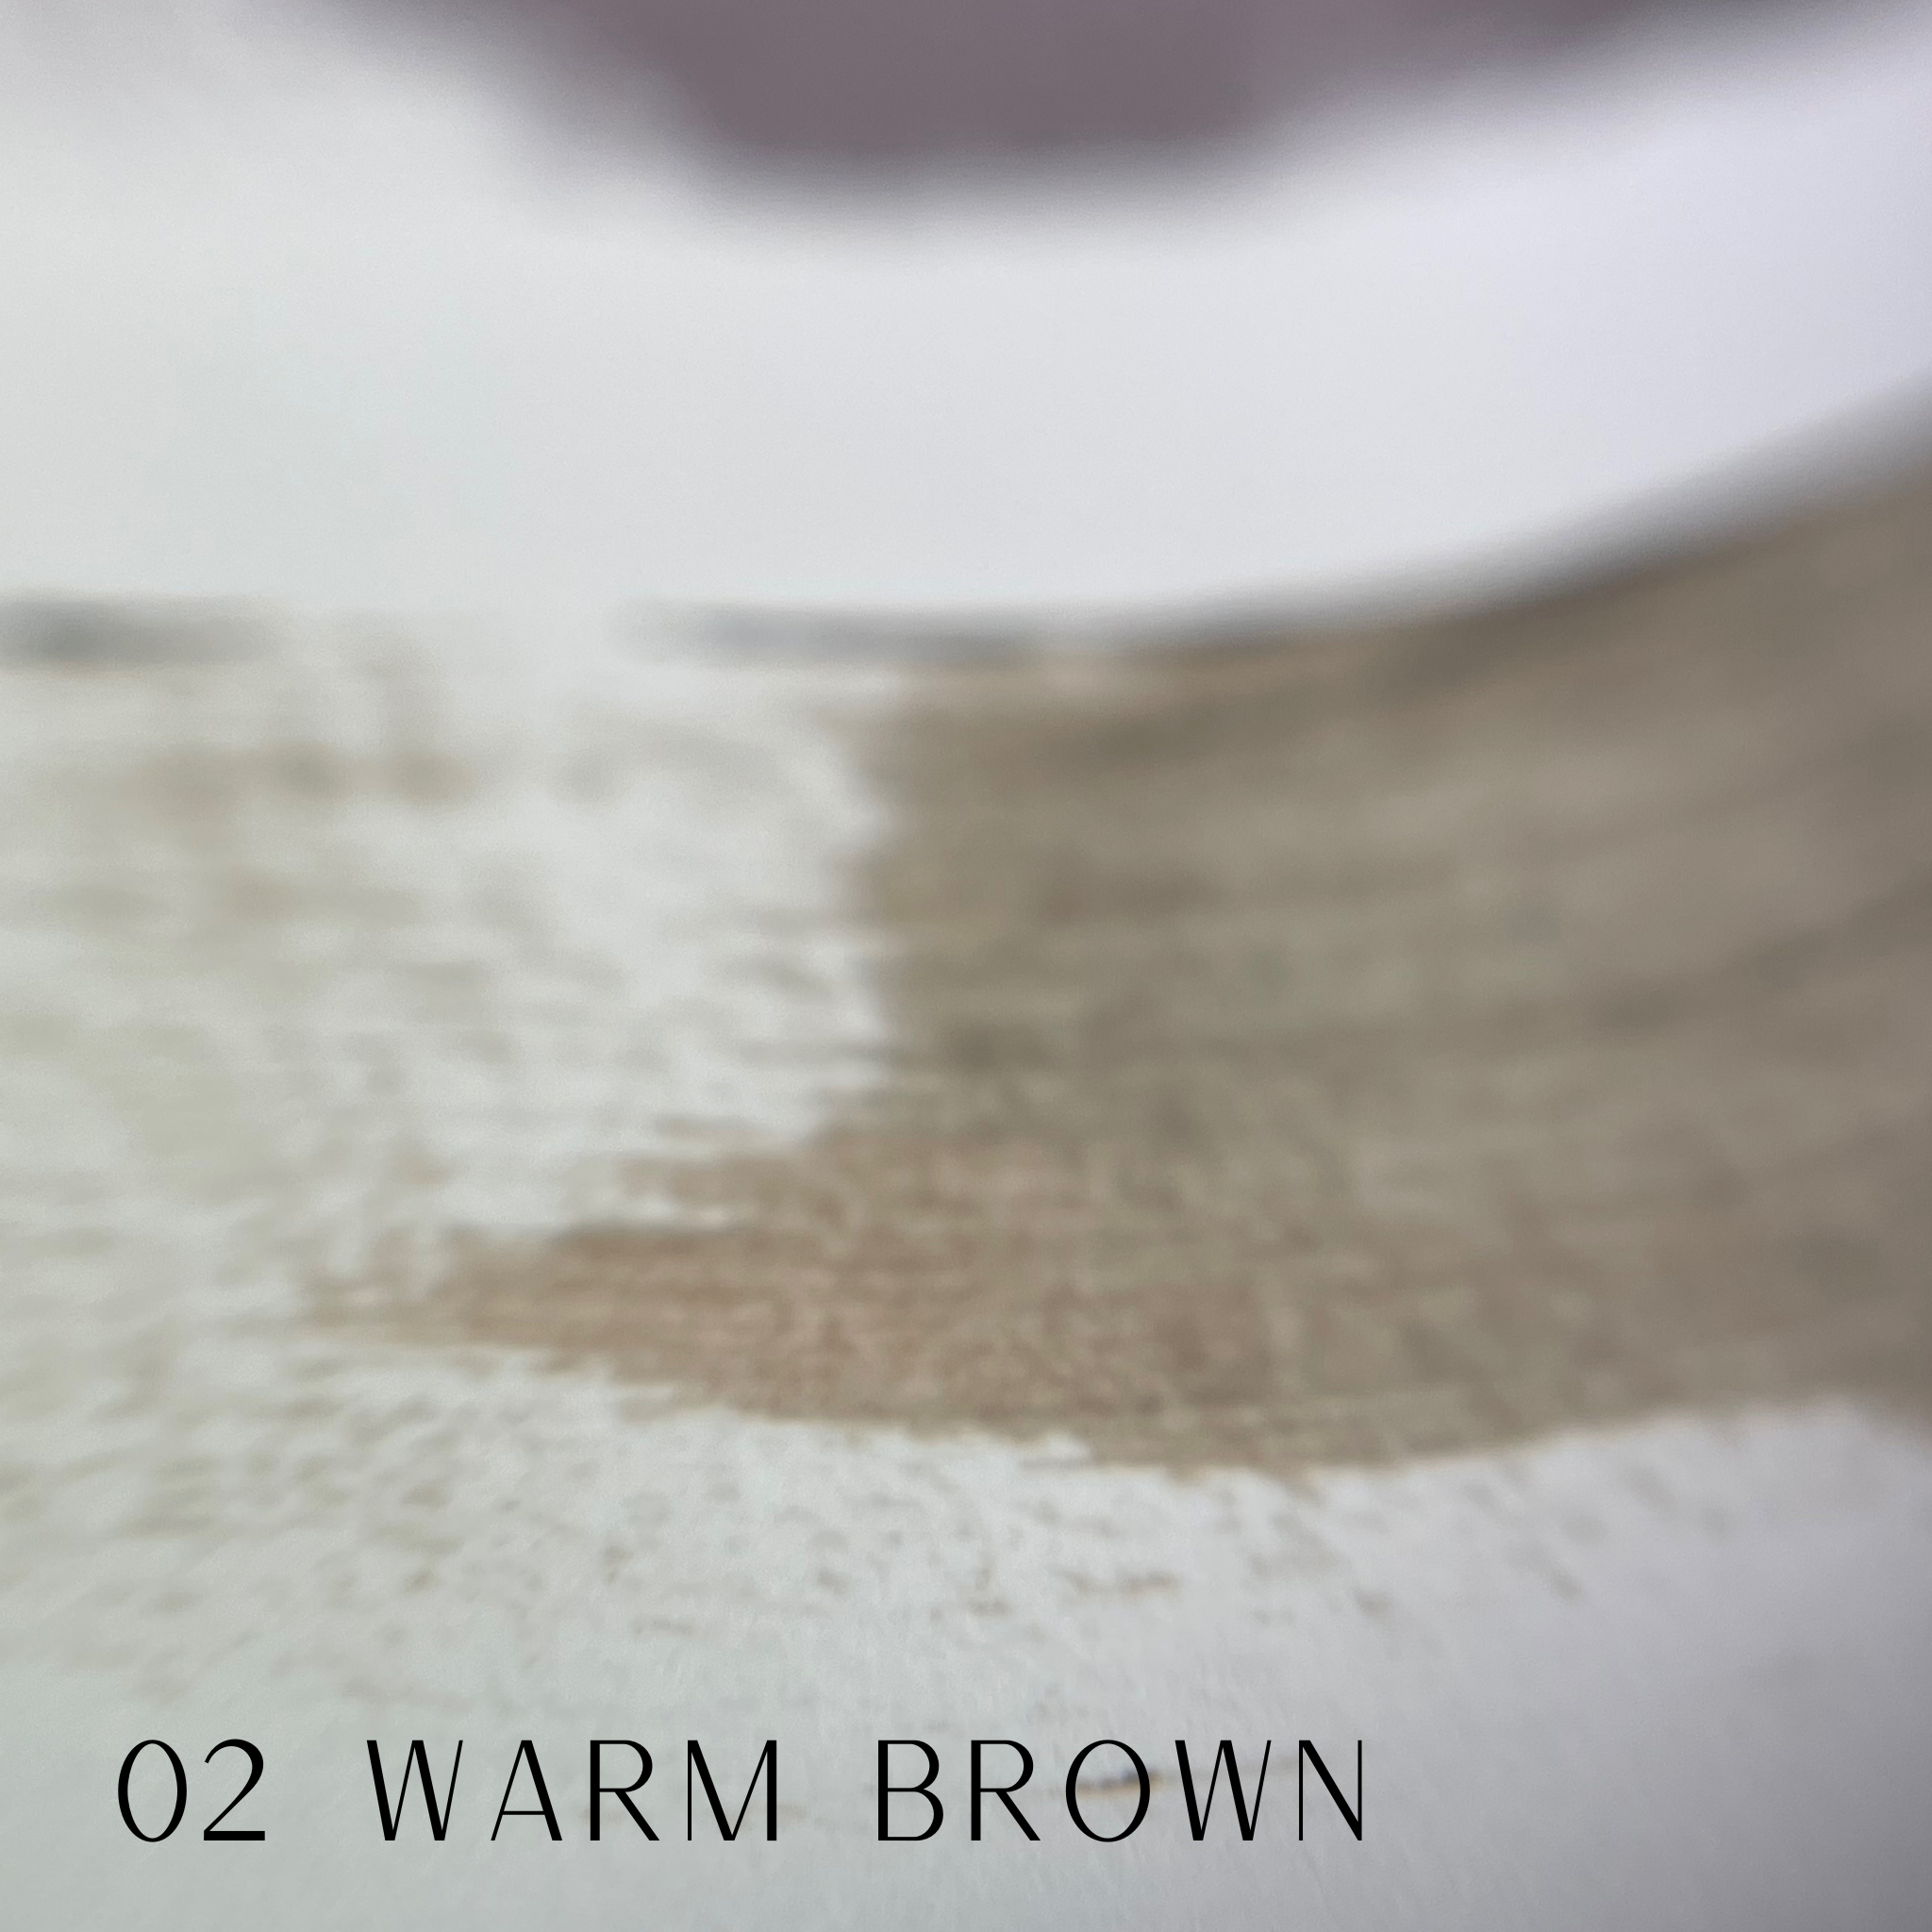 test warm brown teinture zola